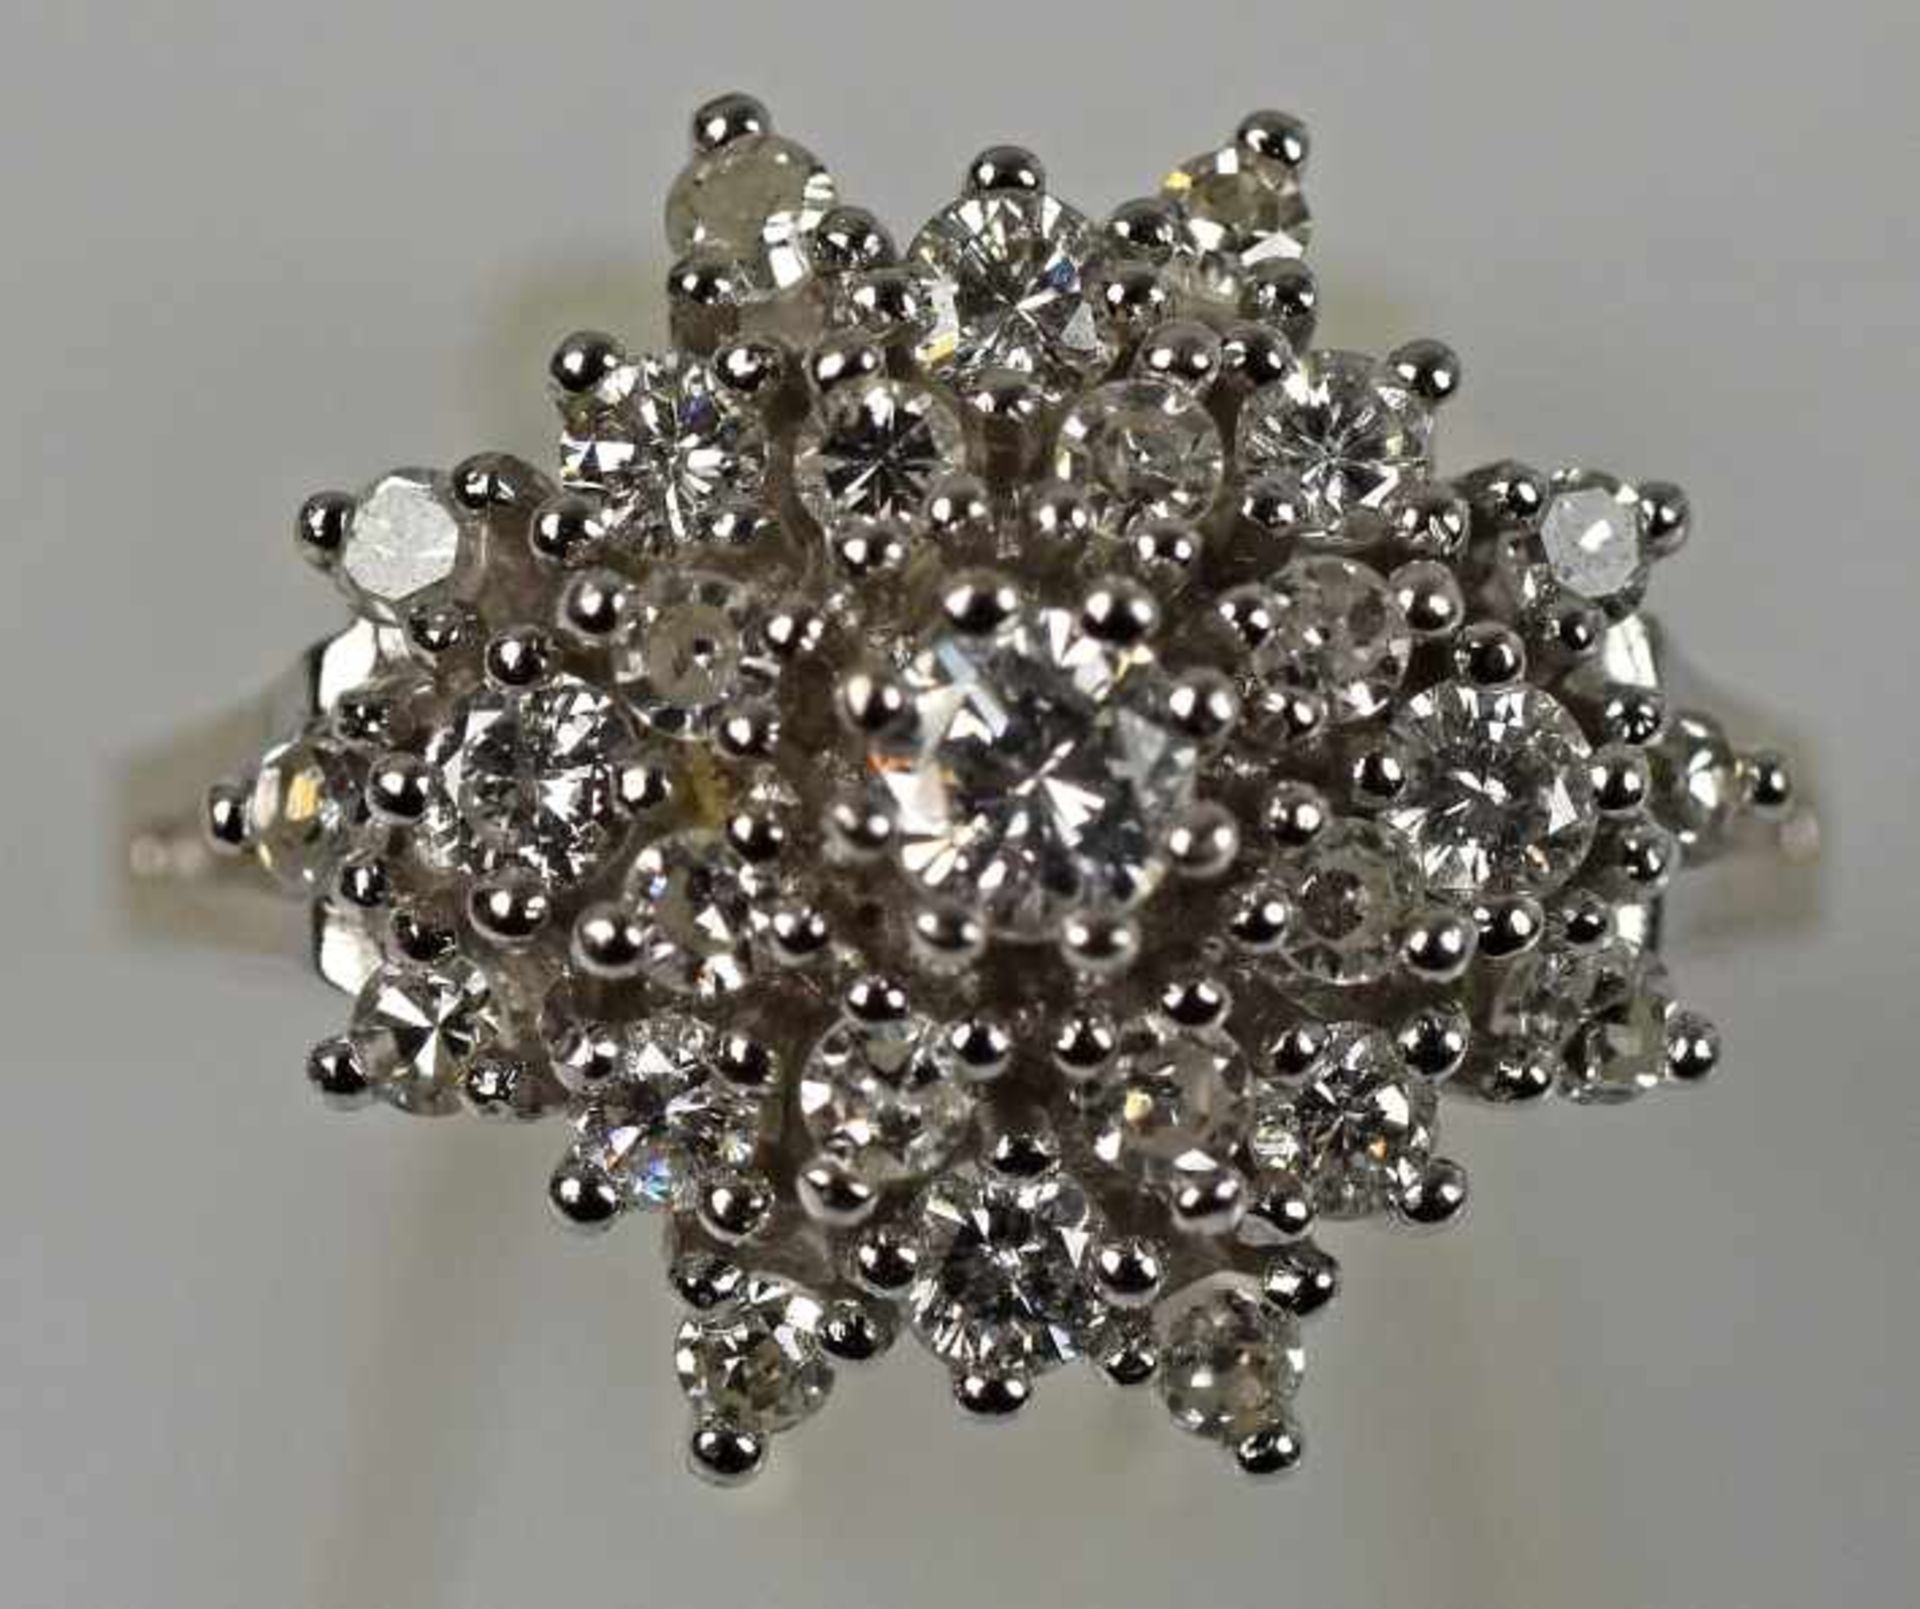 BRILLANTRING große Blüte voll besetzt mit Diamanten, gesamt um 1ct, weiß, kleine Einschlüsse, - Bild 2 aus 3